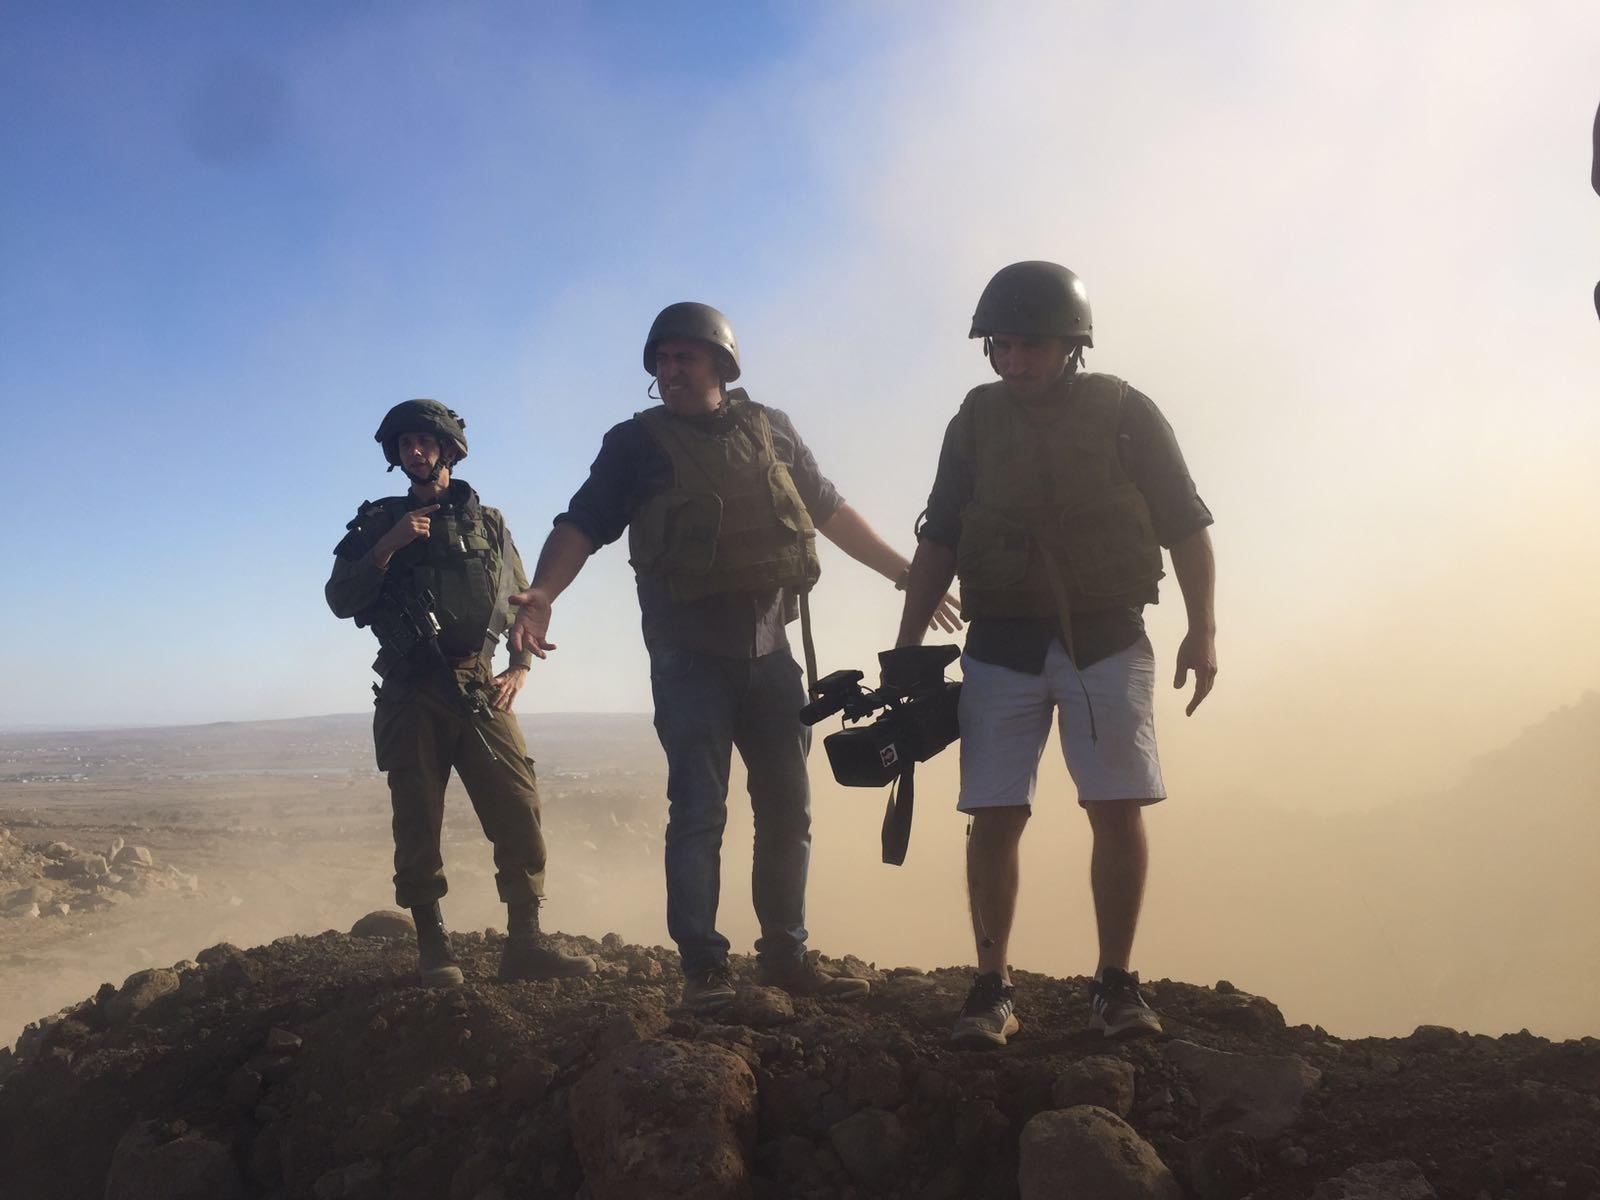 תמונה קרבית בצילומים מעבר לגבול בסוריה עם אלי לוי כתב ערוץ 10